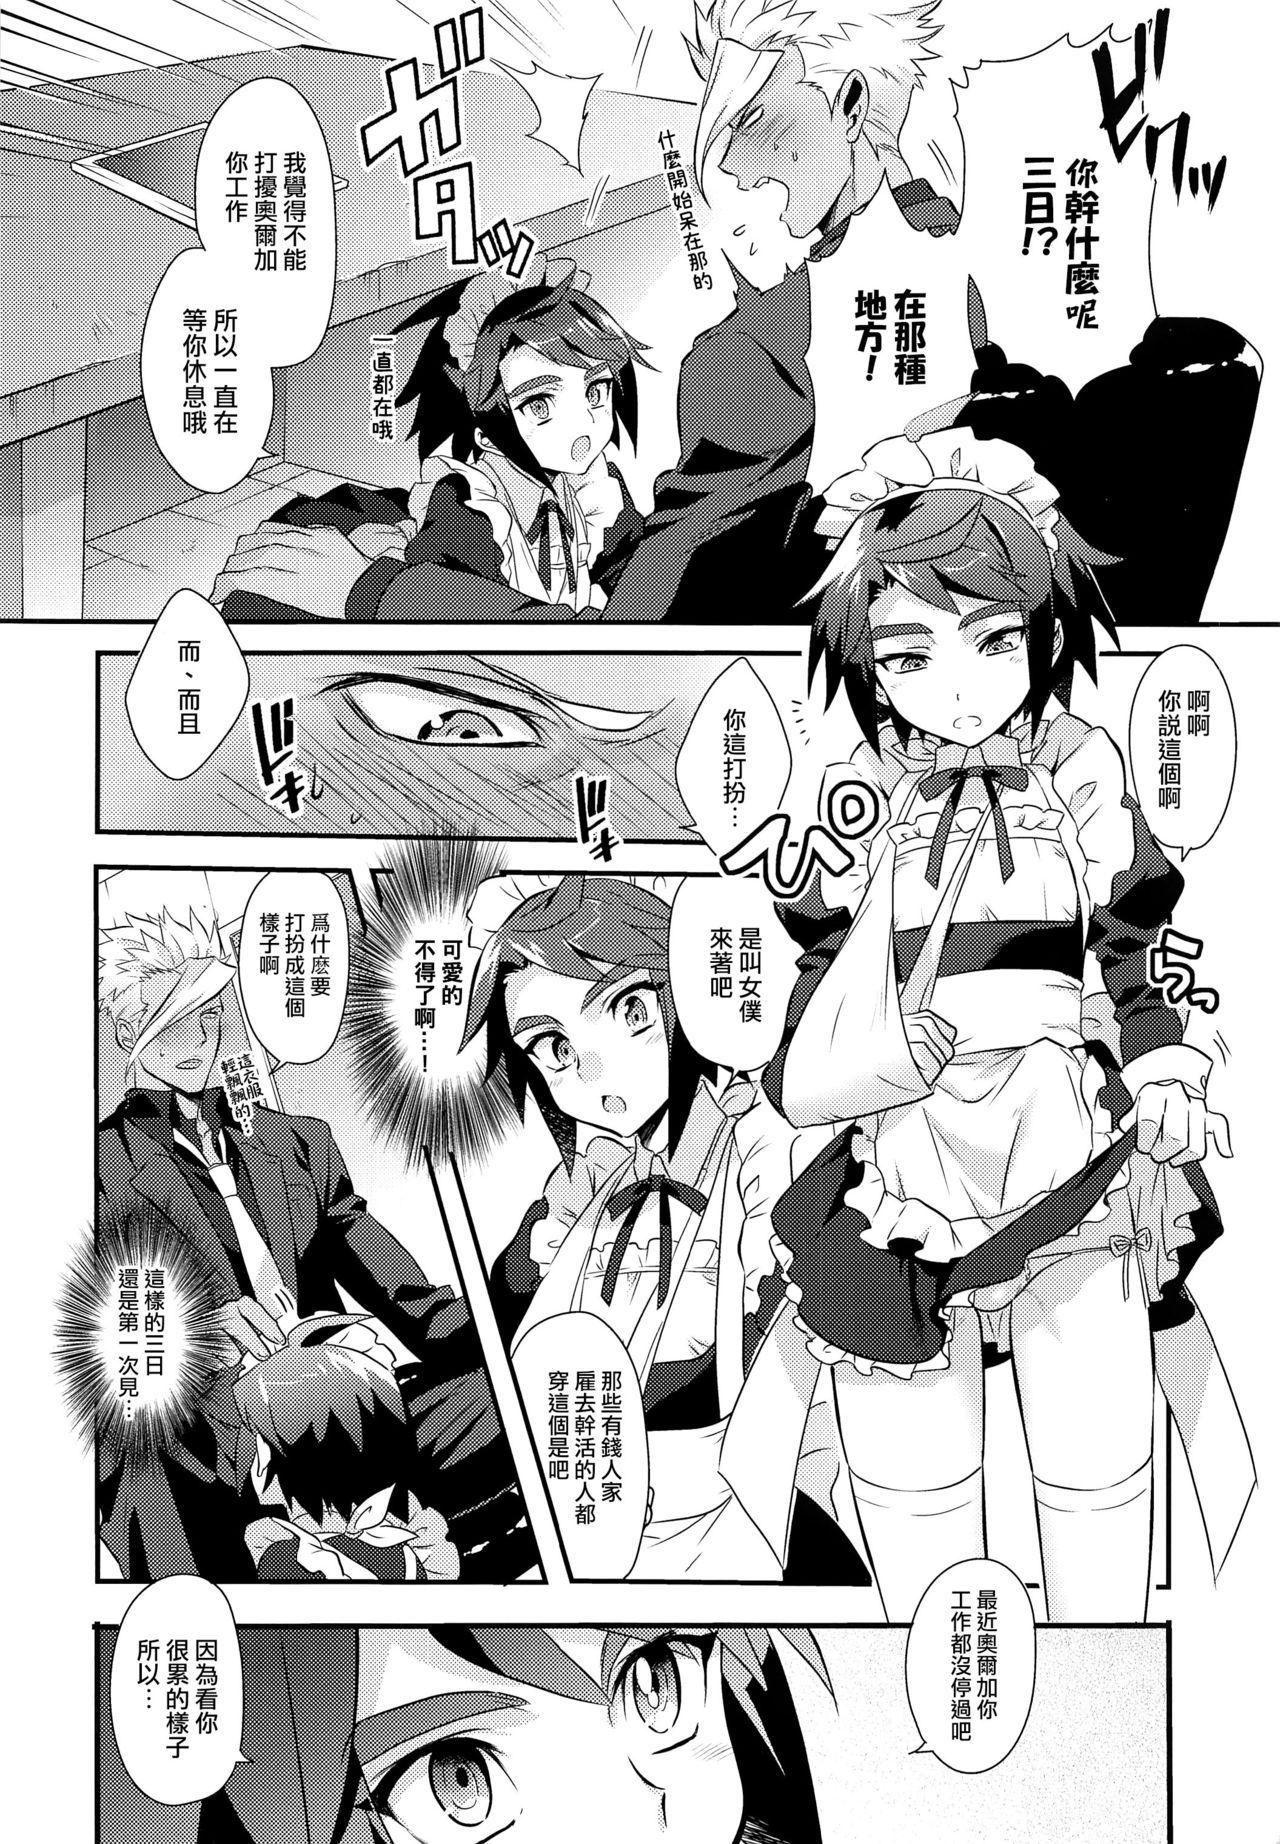 Jeune Mec Uchi no Pilot no Yousu ga Okashii! - Mobile suit gundam tekketsu no orphans Rubdown - Page 5